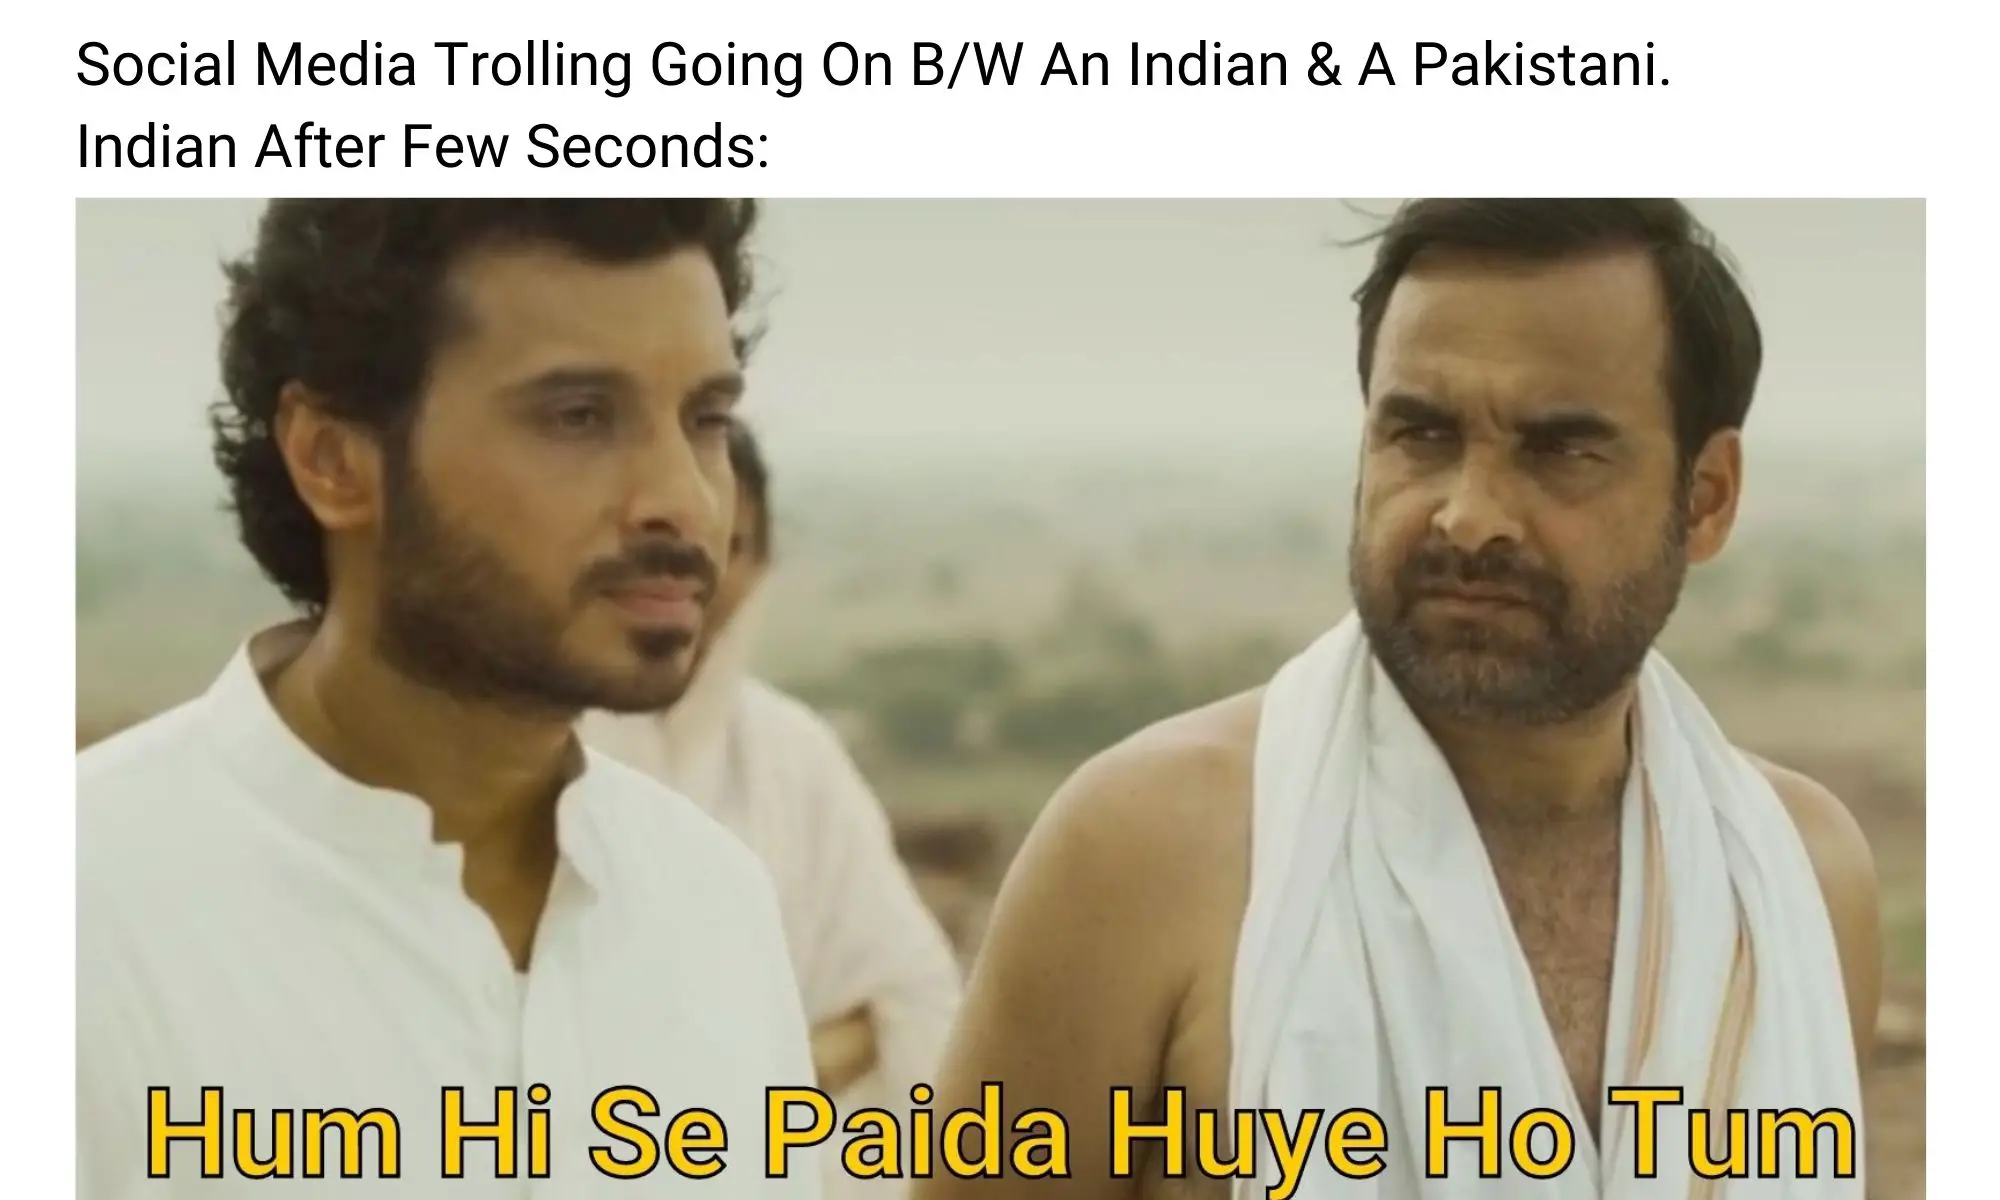 India vs Pakistan meme on mirzapur 2